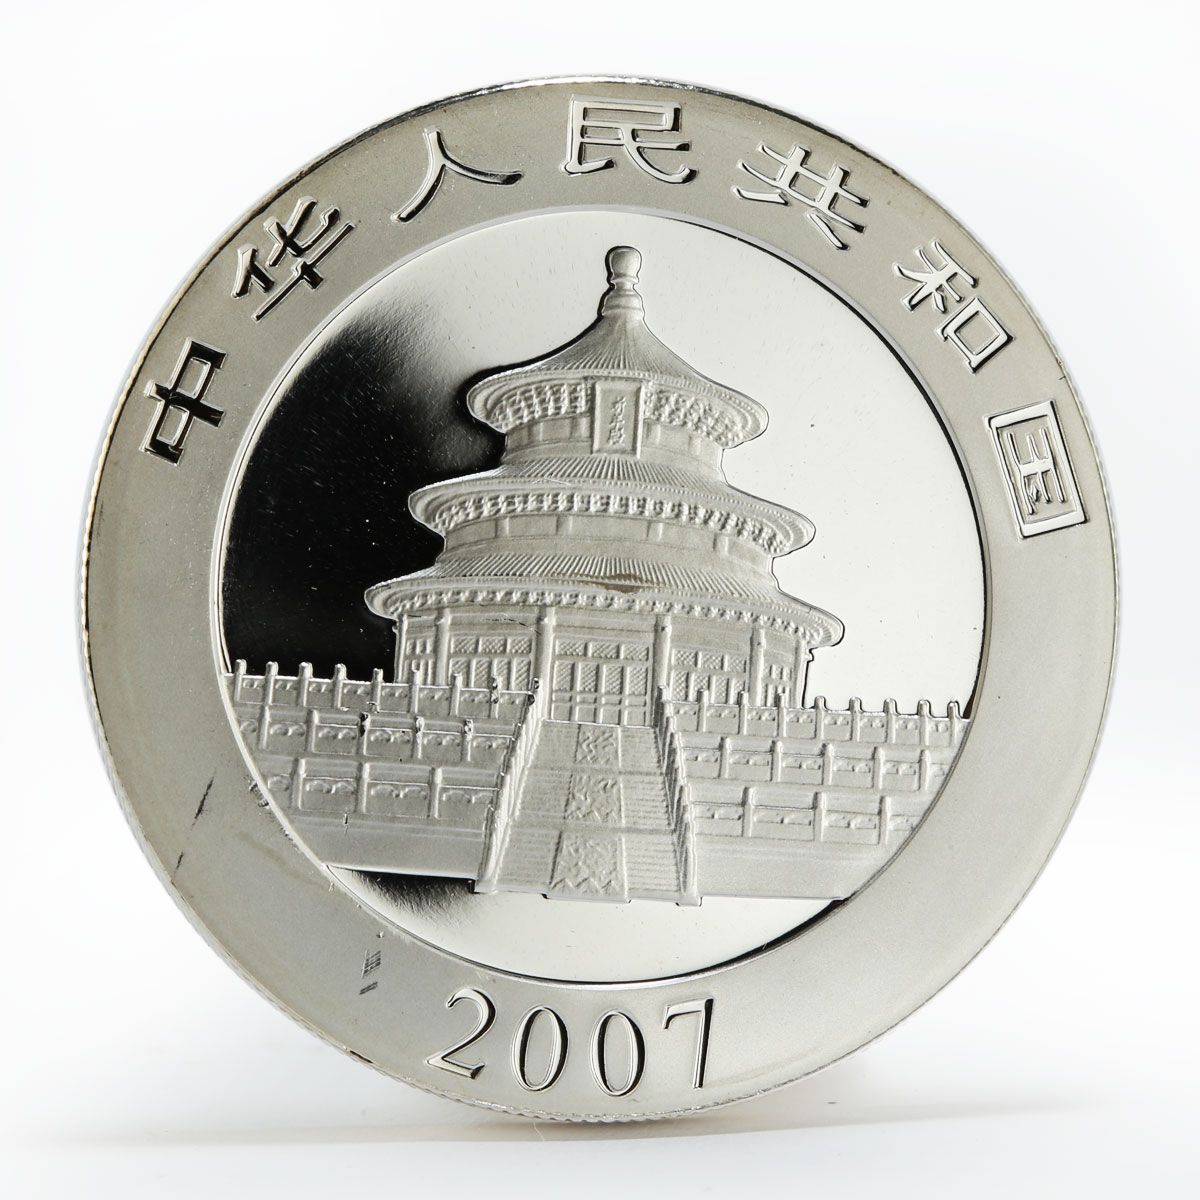 China 10 yuan Panda Series family colored silver coin 2007